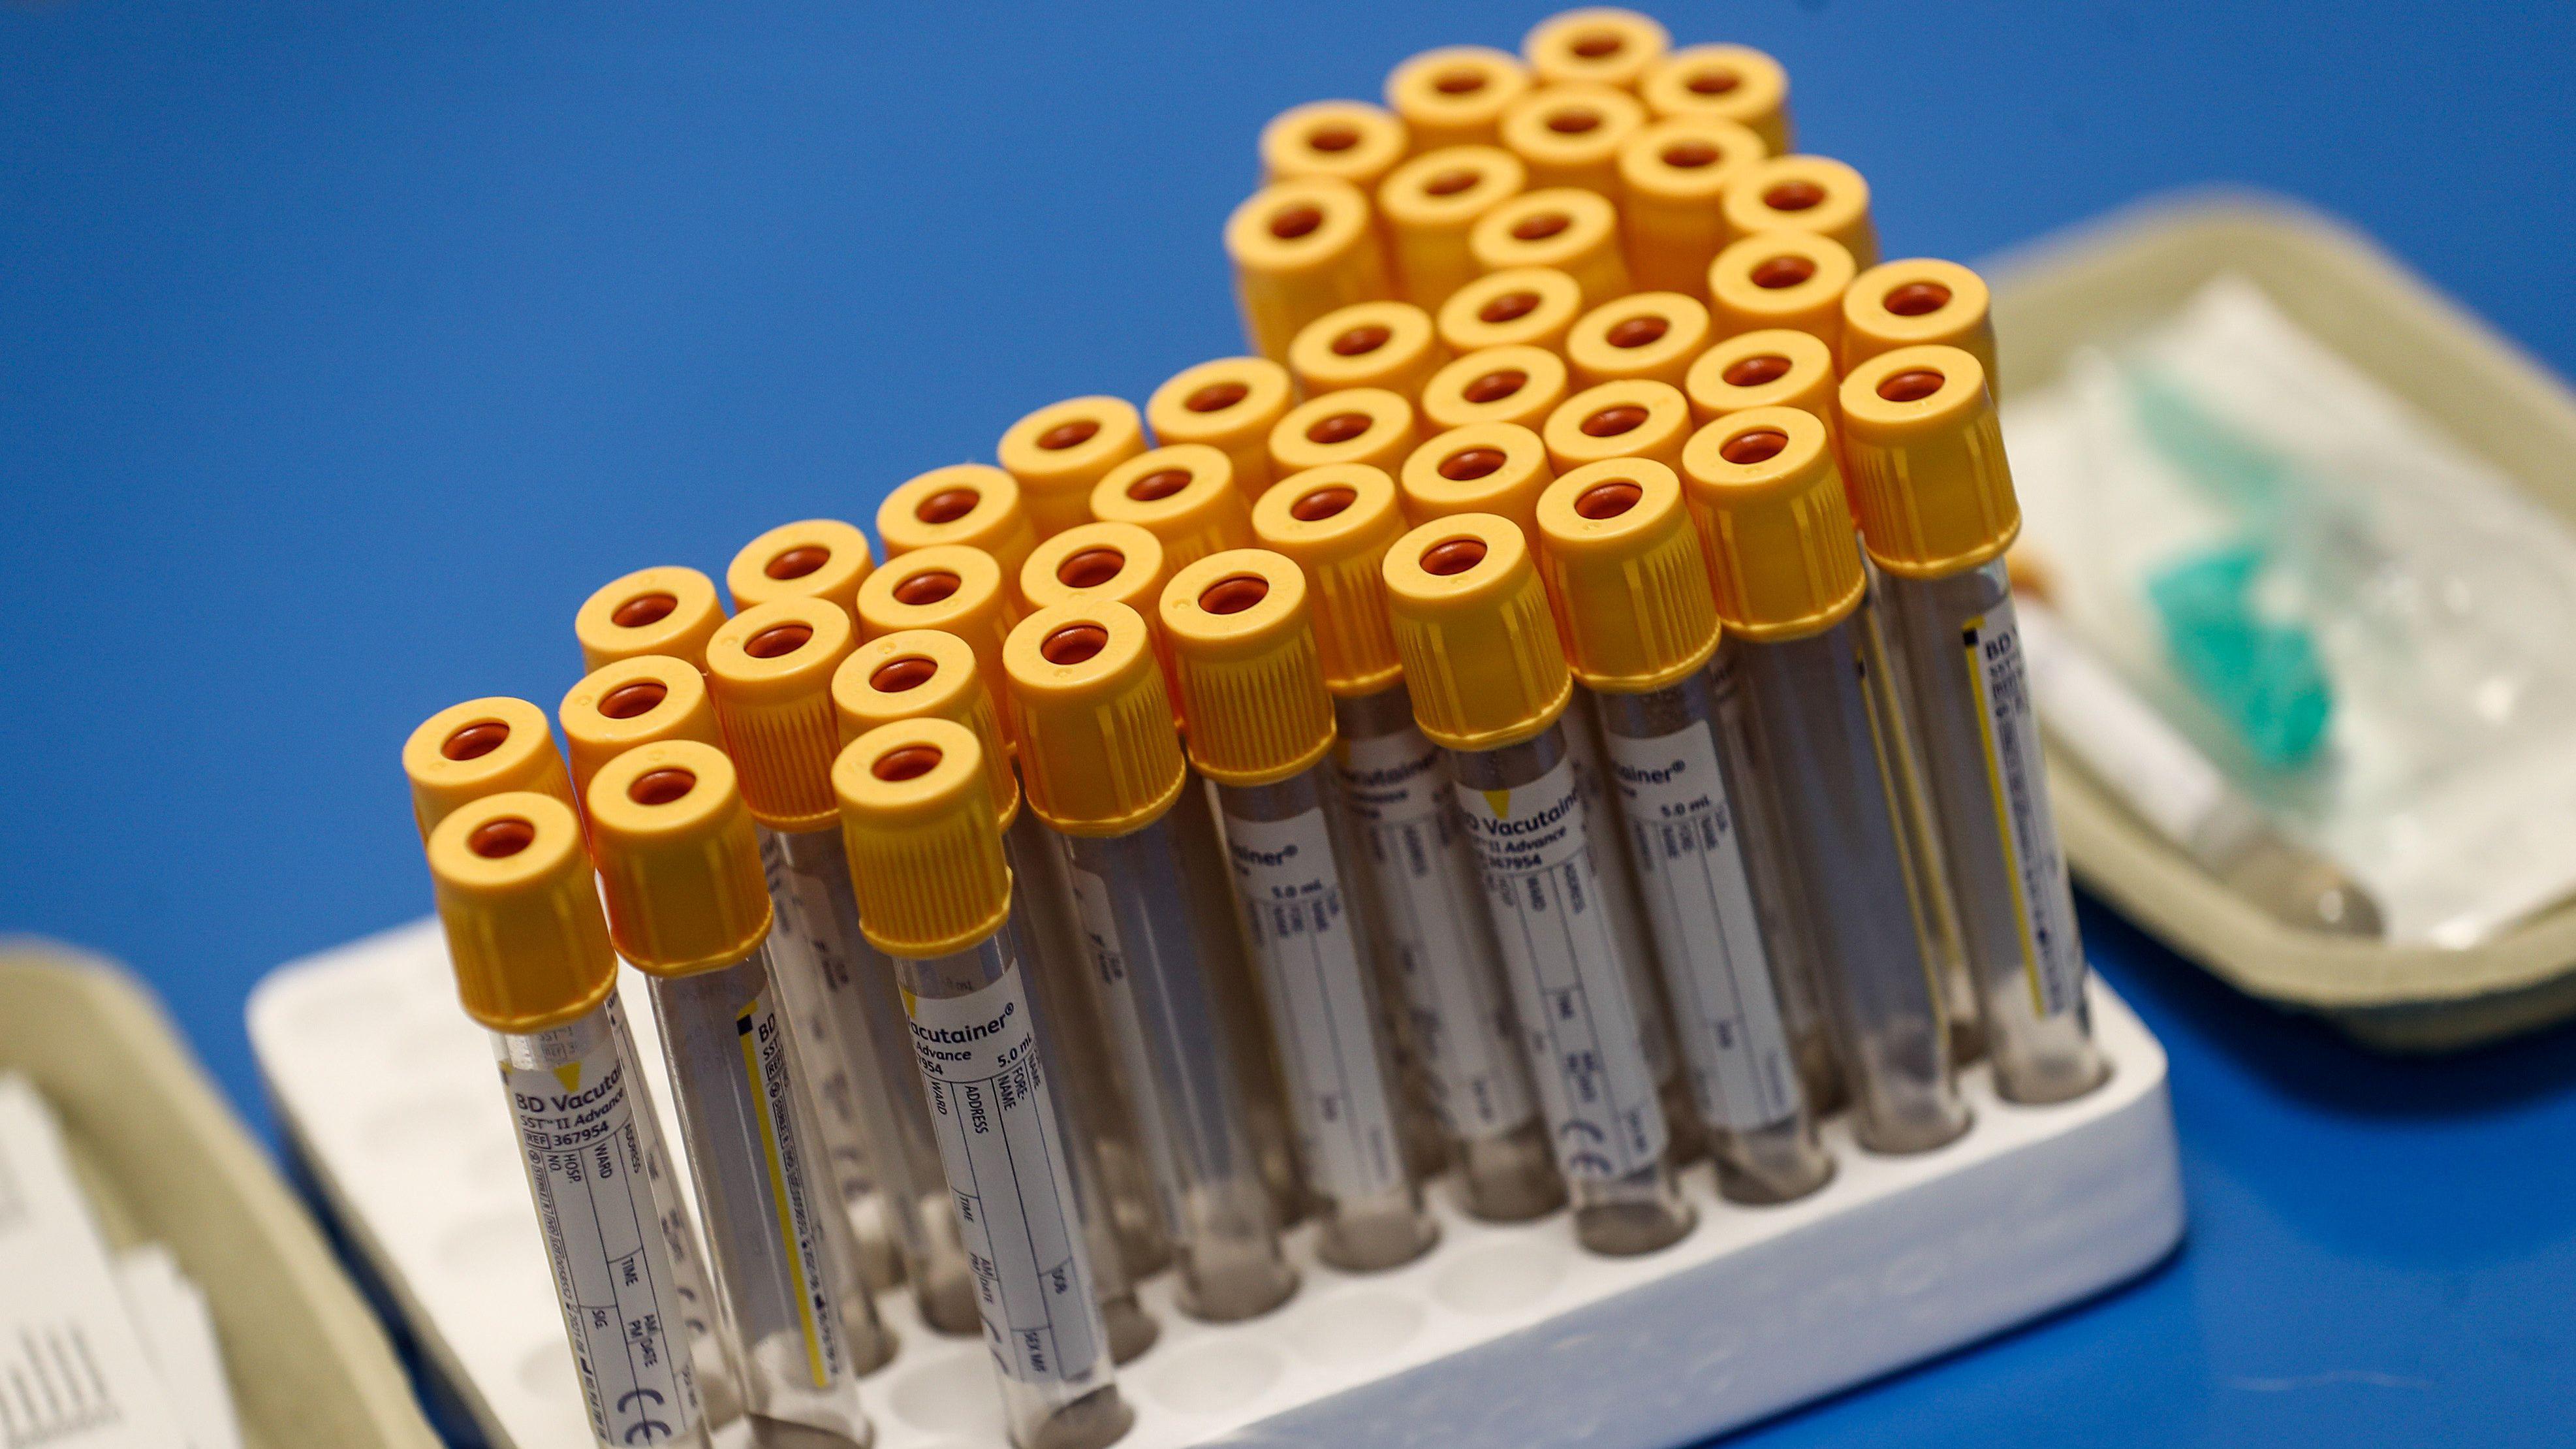 Vários tubos de plástico para a coleta de sangue com tampas amarelas, vazios e com etiquetas, enfileirados.